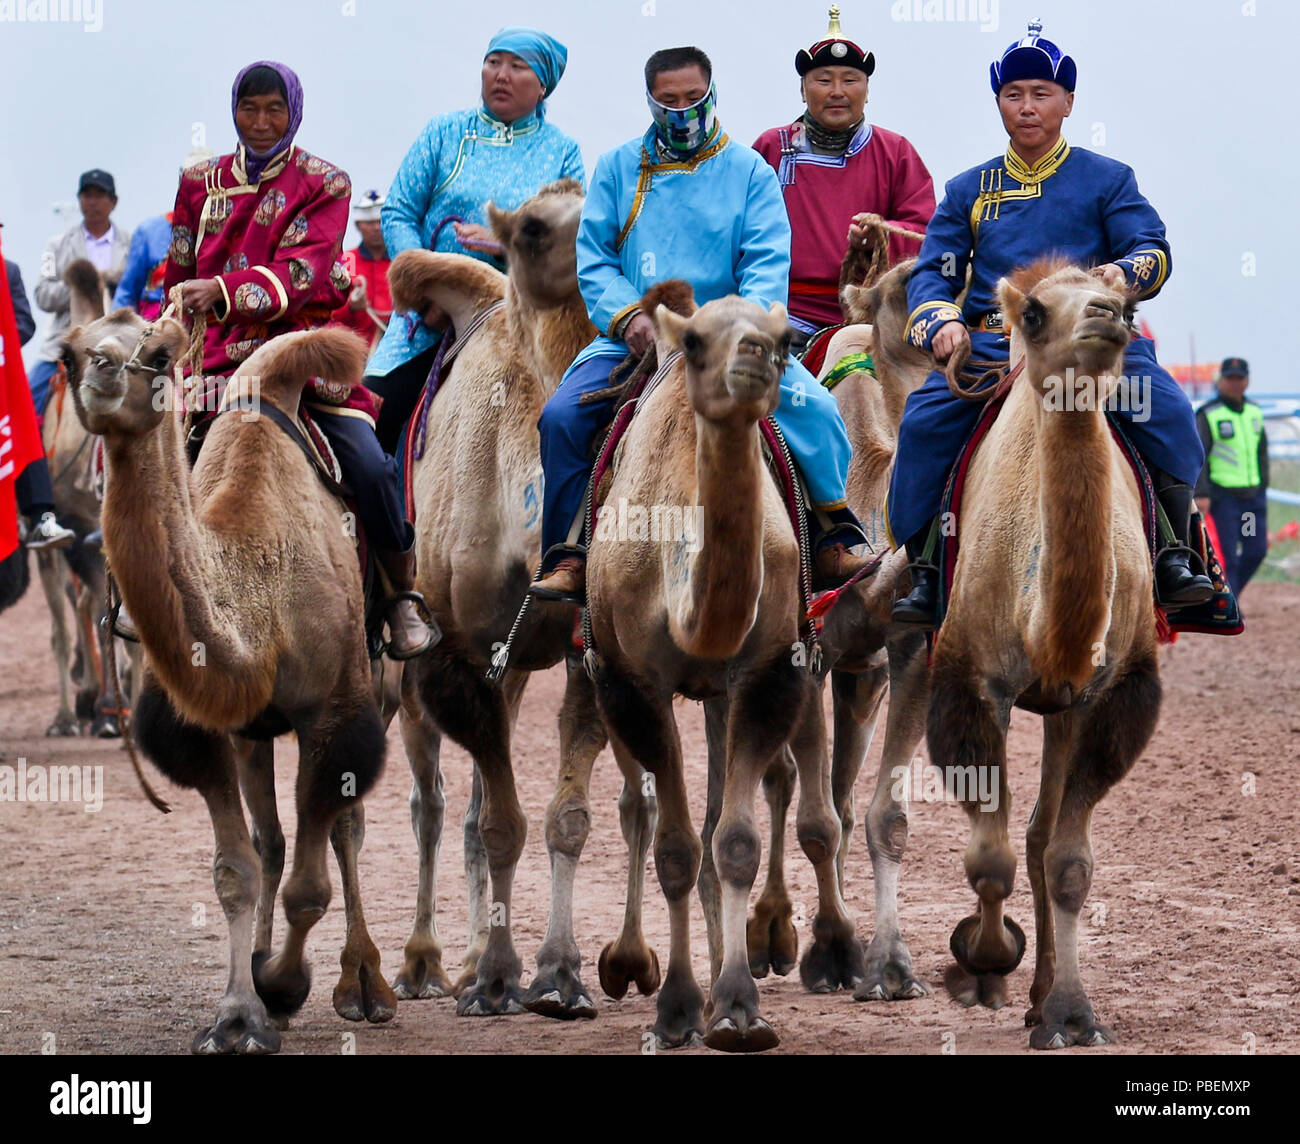 Sunan, Province de Gansu en Chine. 28 juillet, 2018. Les gens sont à prendre part à une course de chameaux au cours d'une réunion traditionnelle des minorités ethniques sports tient à un hippodrome dans Sunan Yugur comté autonome du nord-ouest de la Chine, la province de Gansu, le 28 juillet 2018. Credit : Wang Jiang/Xinhua/Alamy Live News Banque D'Images